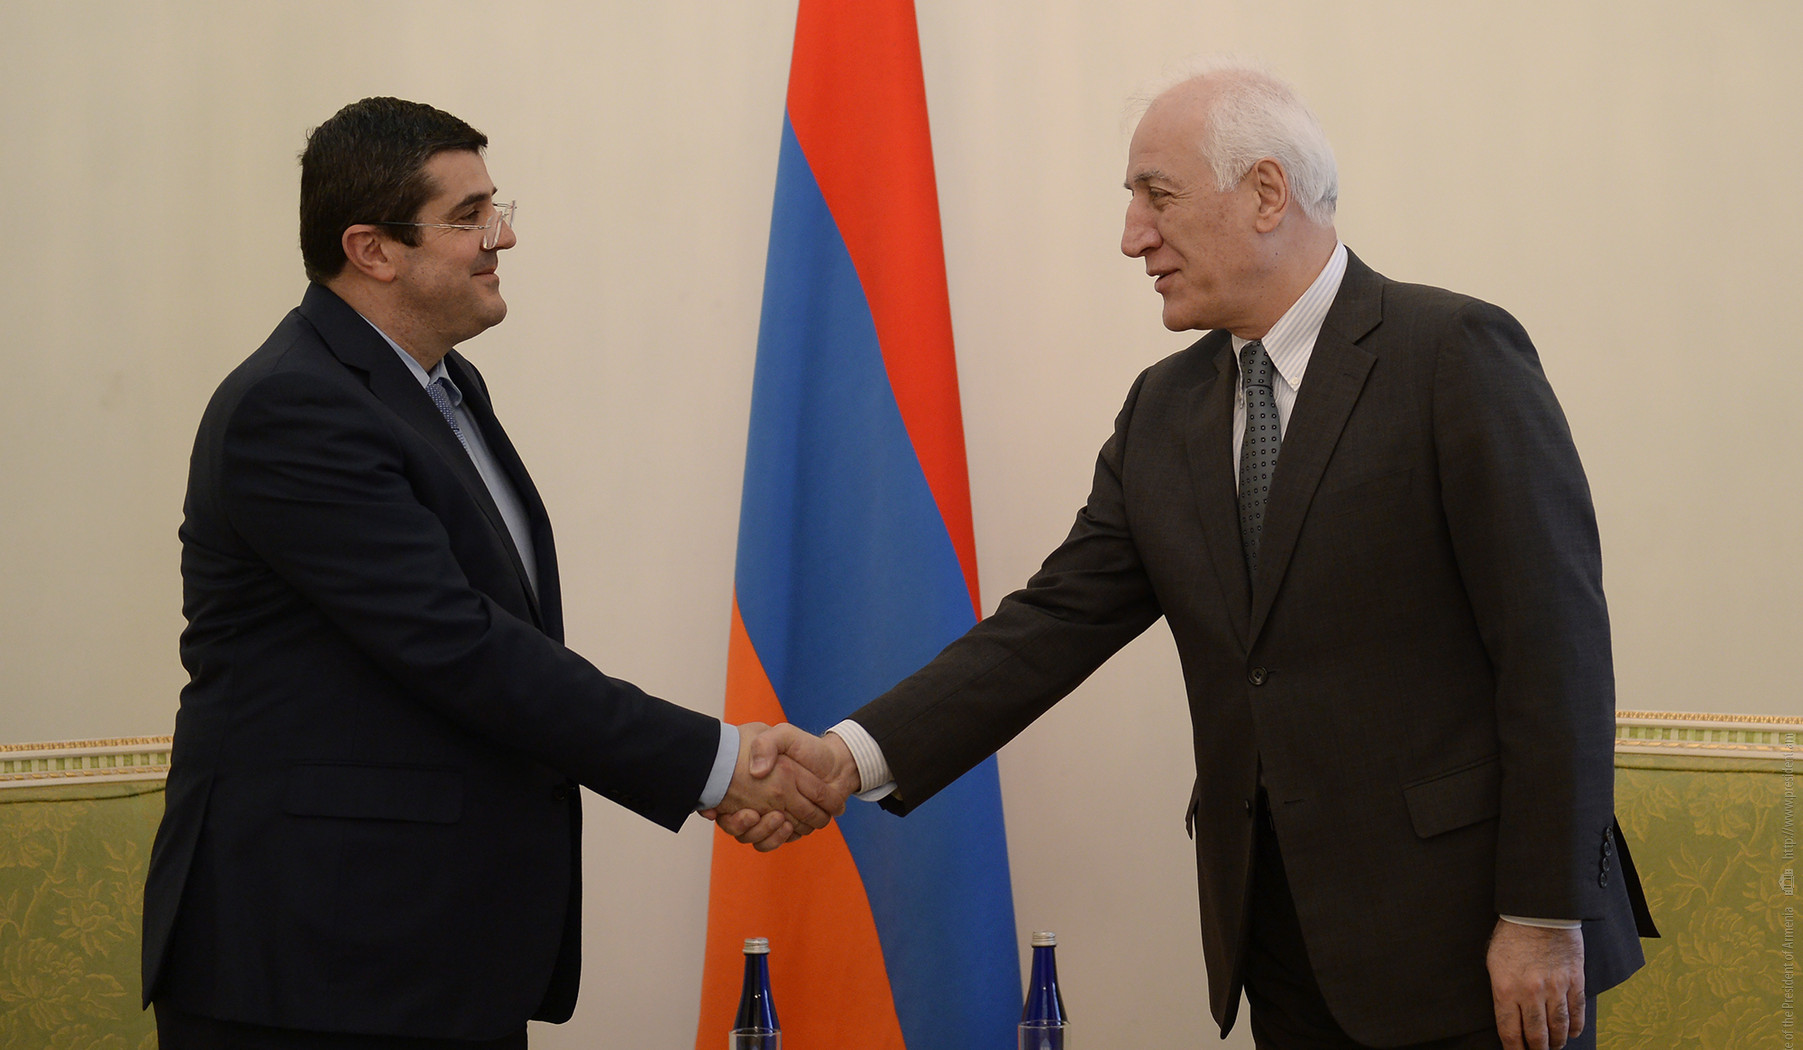 Հայաստանի և Արցախի նախագահներն անդրադարձել են ներքին և արտաքին քաղաքական հարցերին, արցախահայության առջև ծառացած մարտահրավերներին